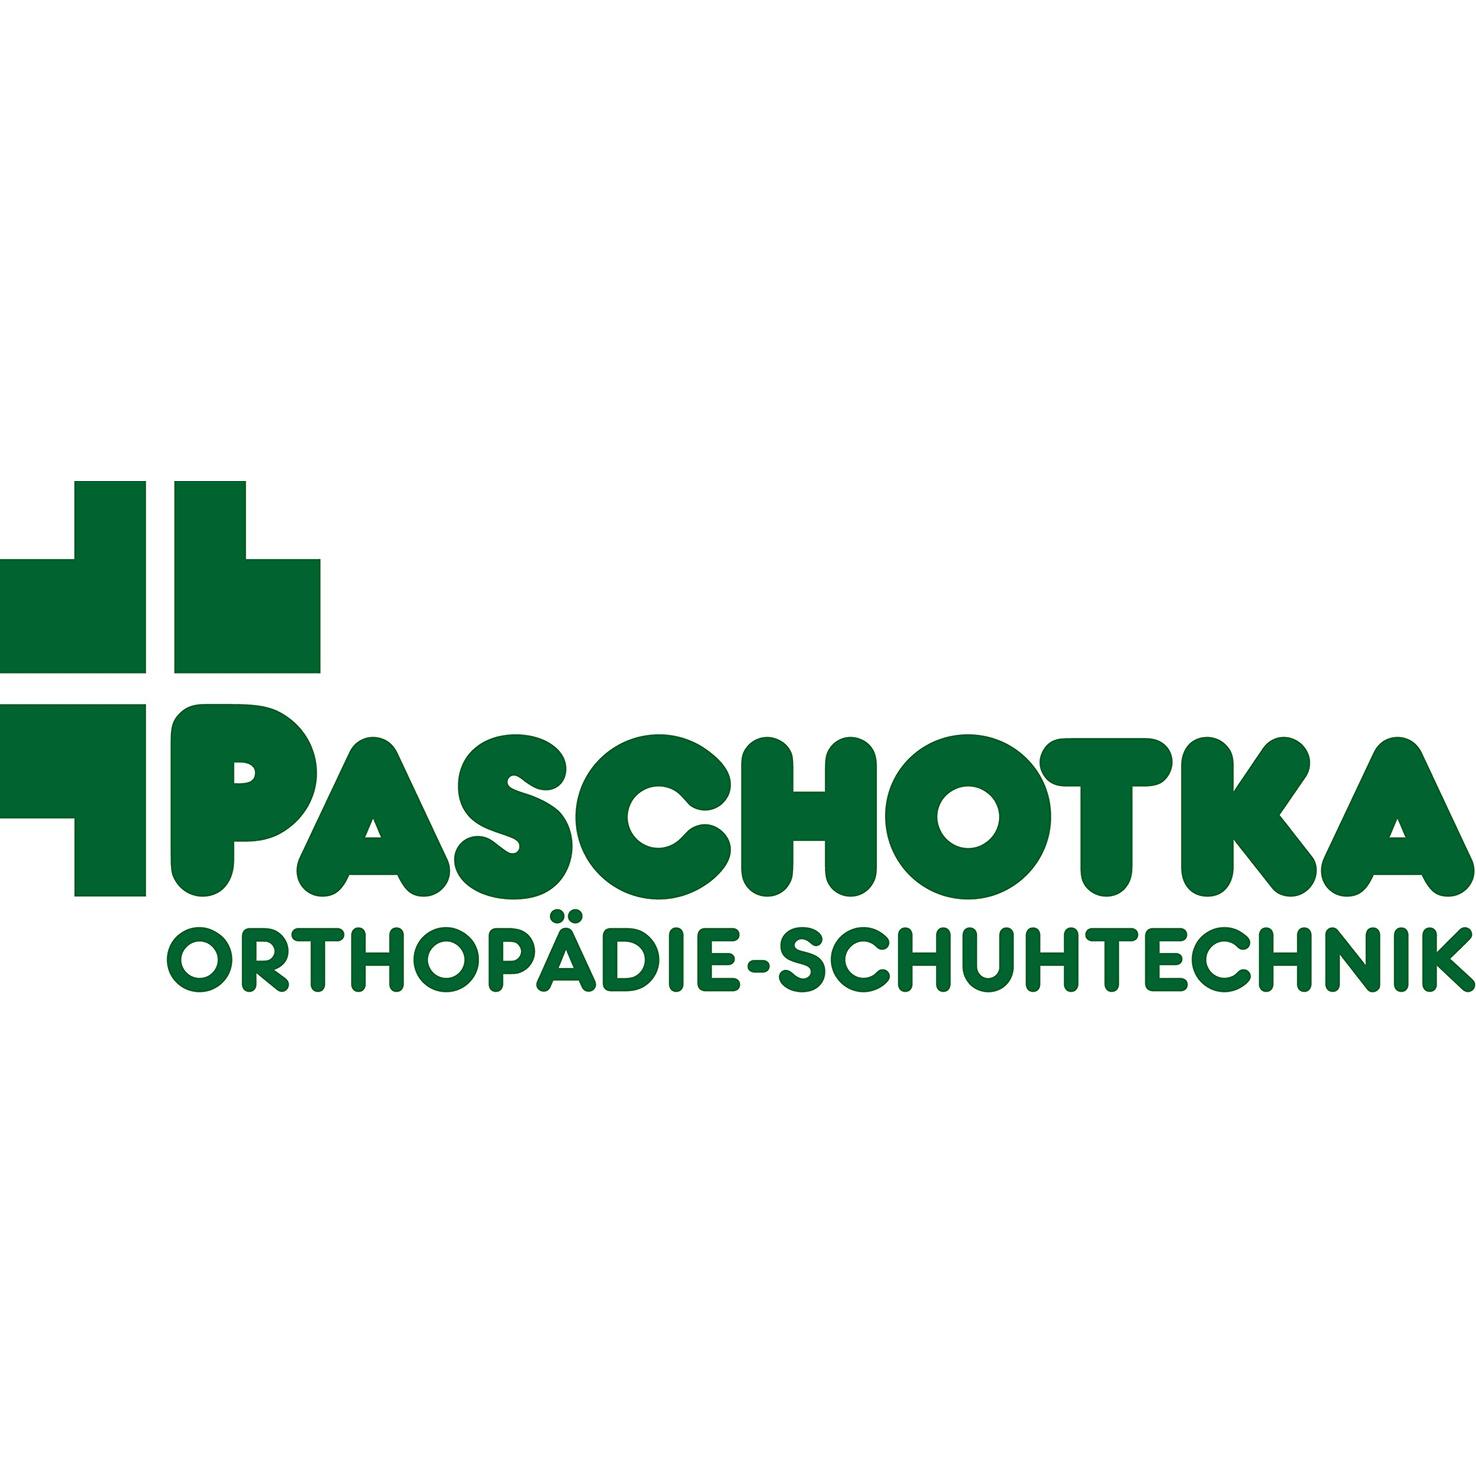 Paschotka Orthopädie - Schuhtechnik  